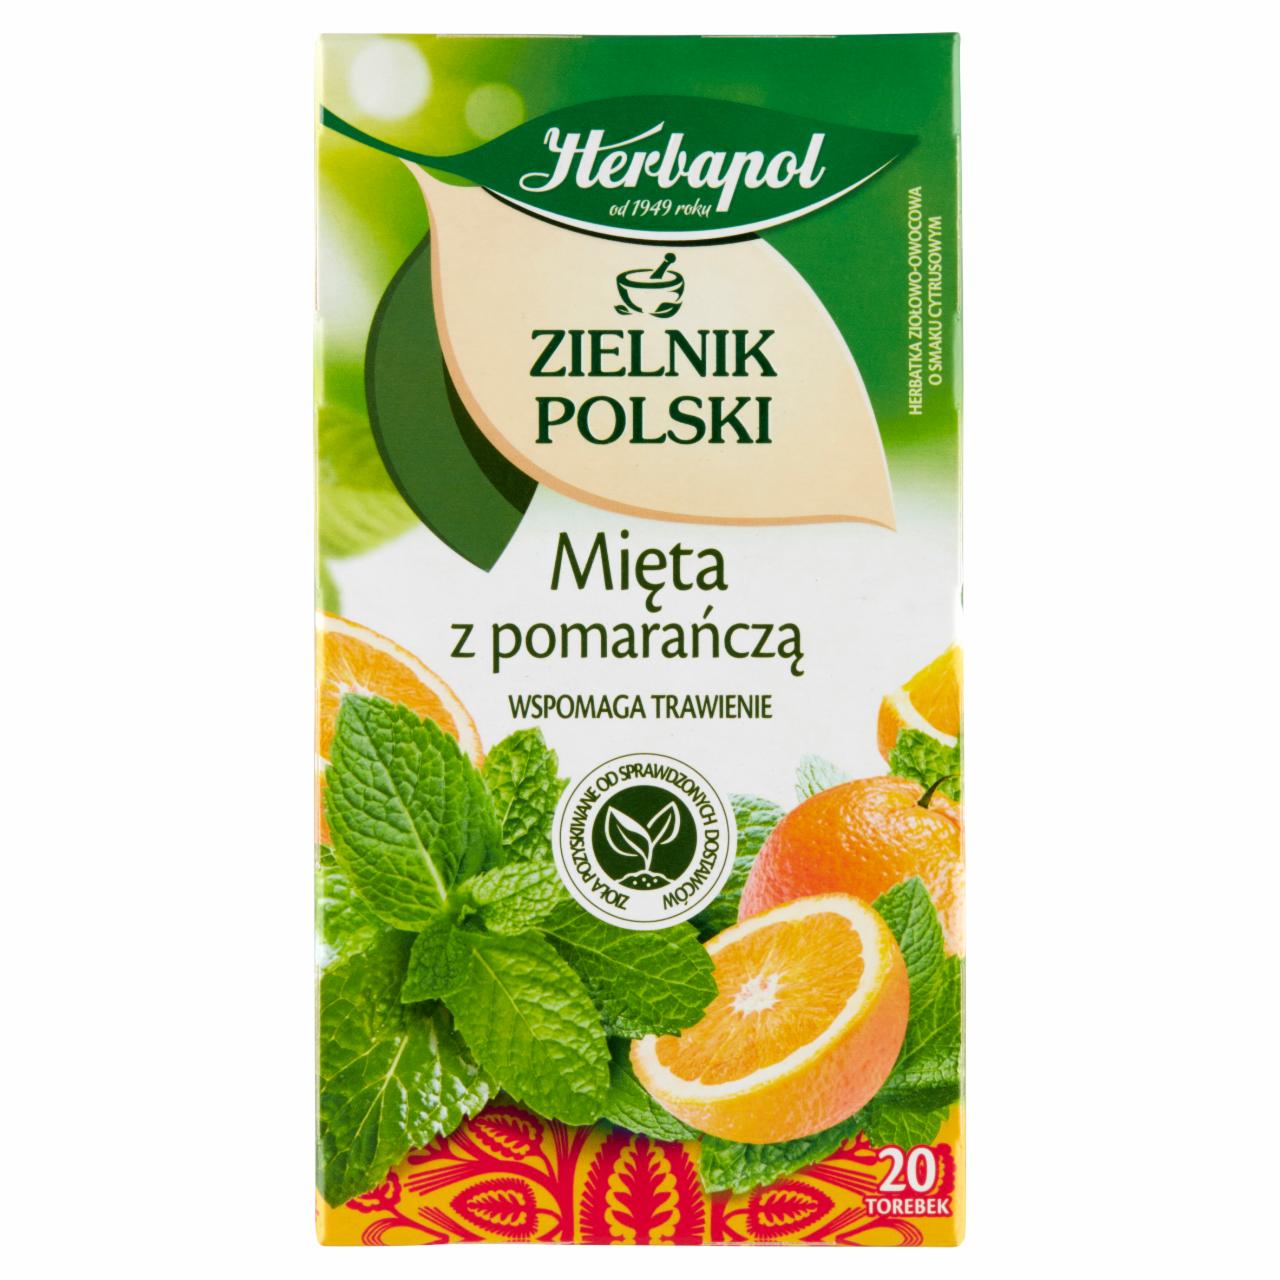 Zdjęcia - Herbapol Zielnik Polski Herbatka ziołowo-owocowa mięta z pomarańczą 30 g (20 x 1,5 g)